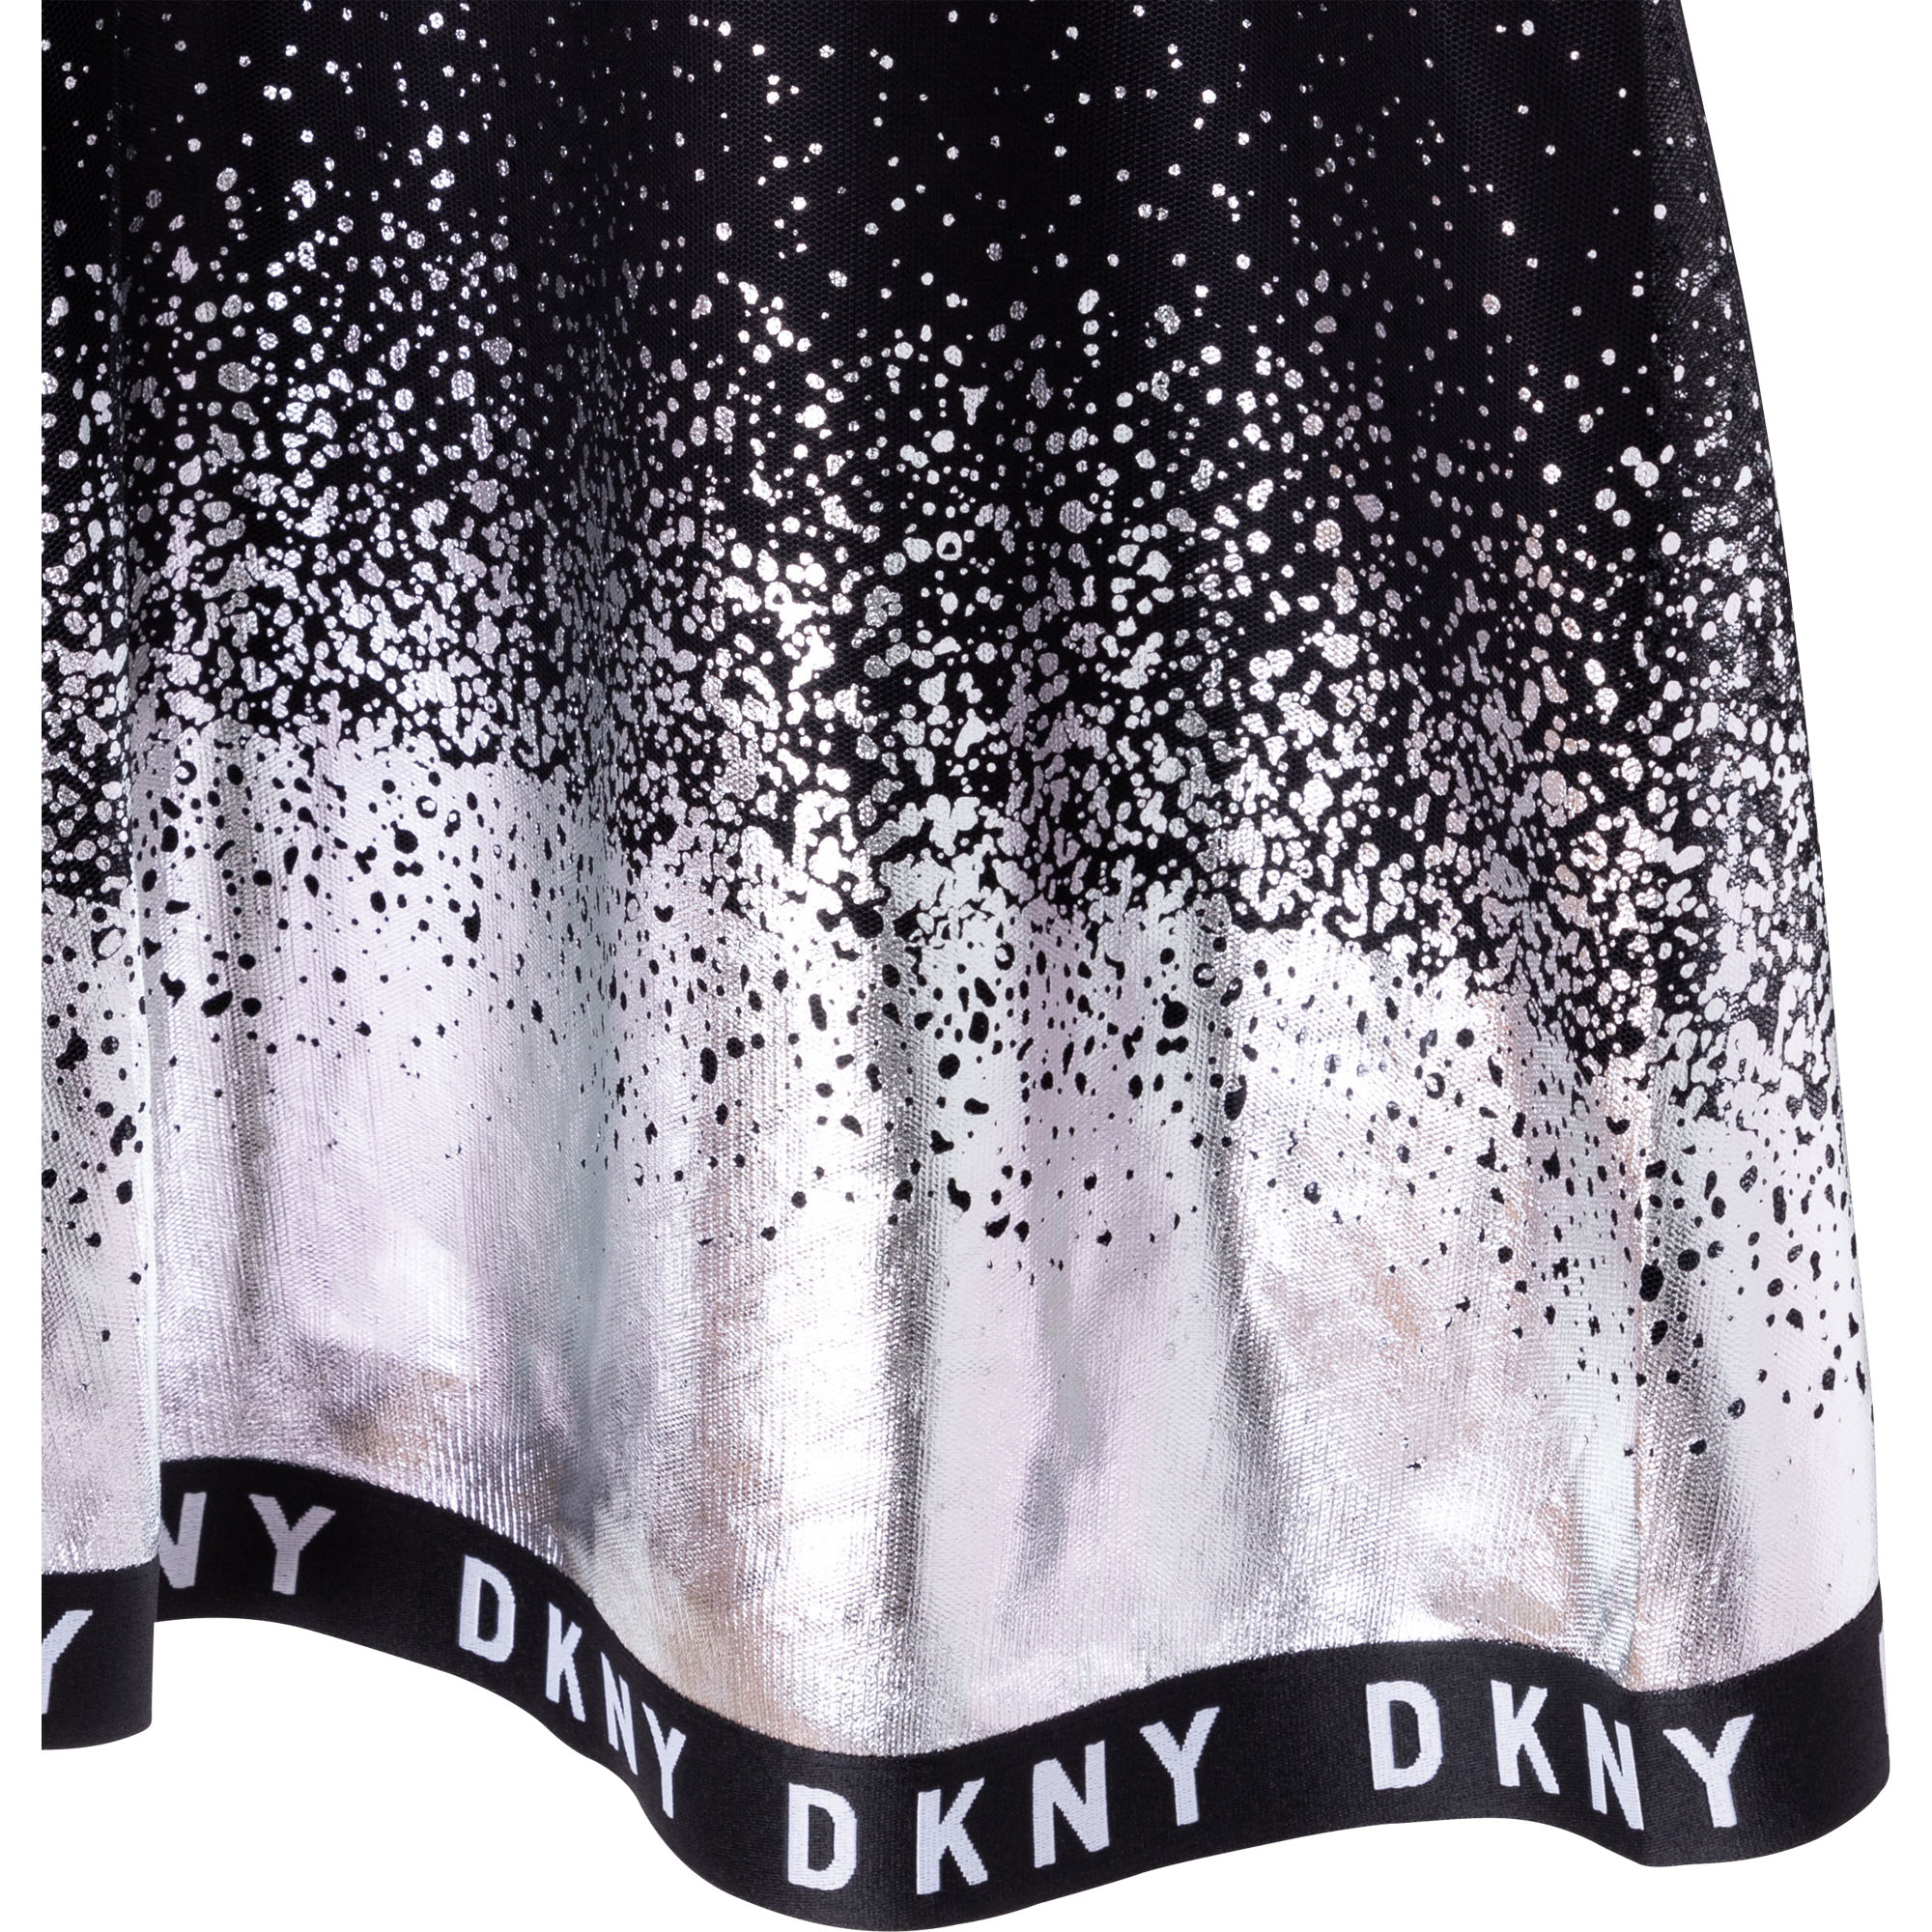 2-in-1 novelty dress DKNY for GIRL